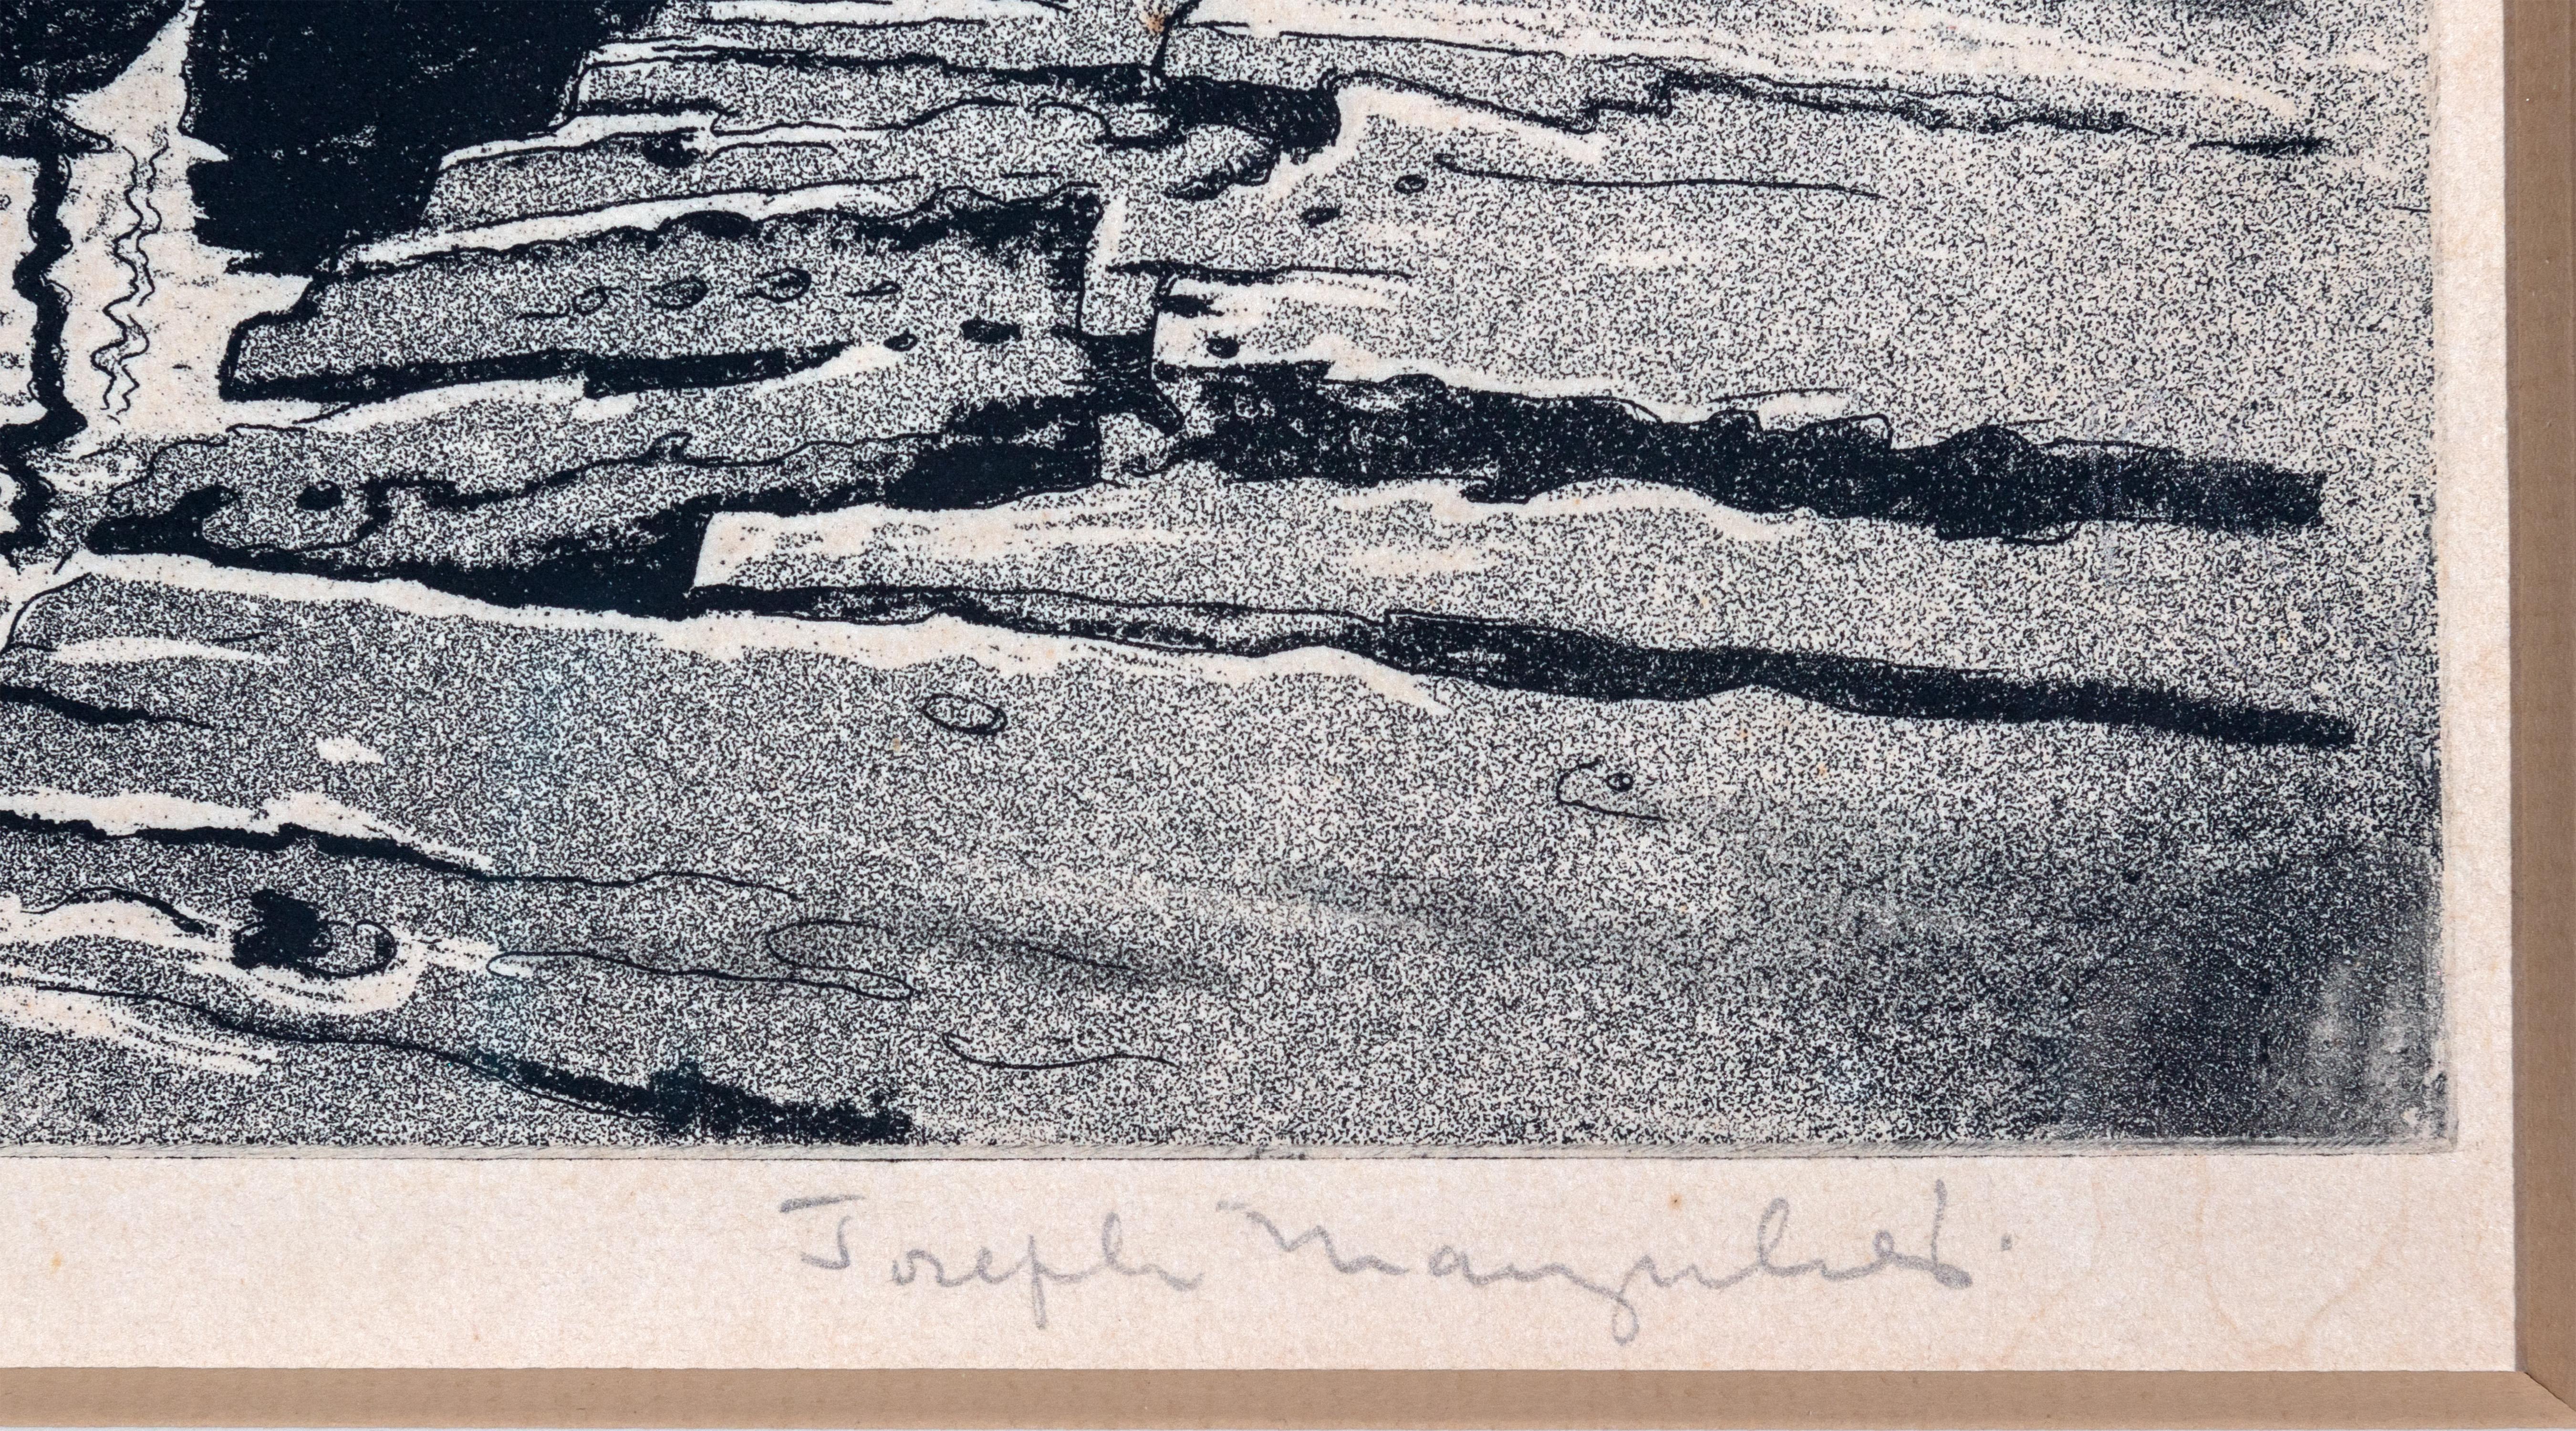 Schwarz-Weiß-Radierung Reise 1930er Jahre Realismus Wasser Industrielle Outdoors Signiert (Amerikanischer Realismus), Print, von Joseph Margulies